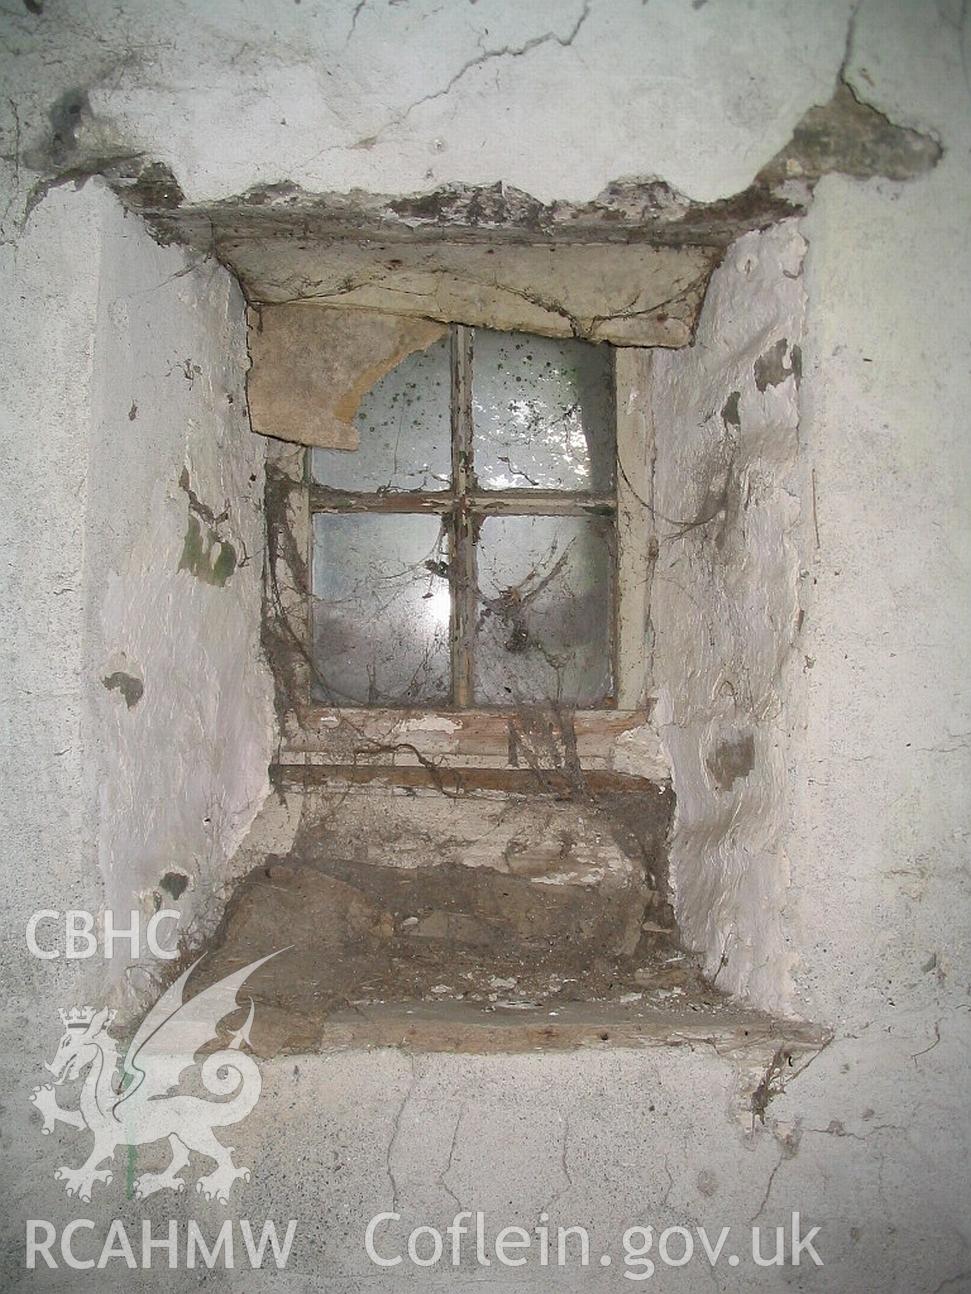 Dwelling end of Allt Ddu farmhouse, internal window detail.